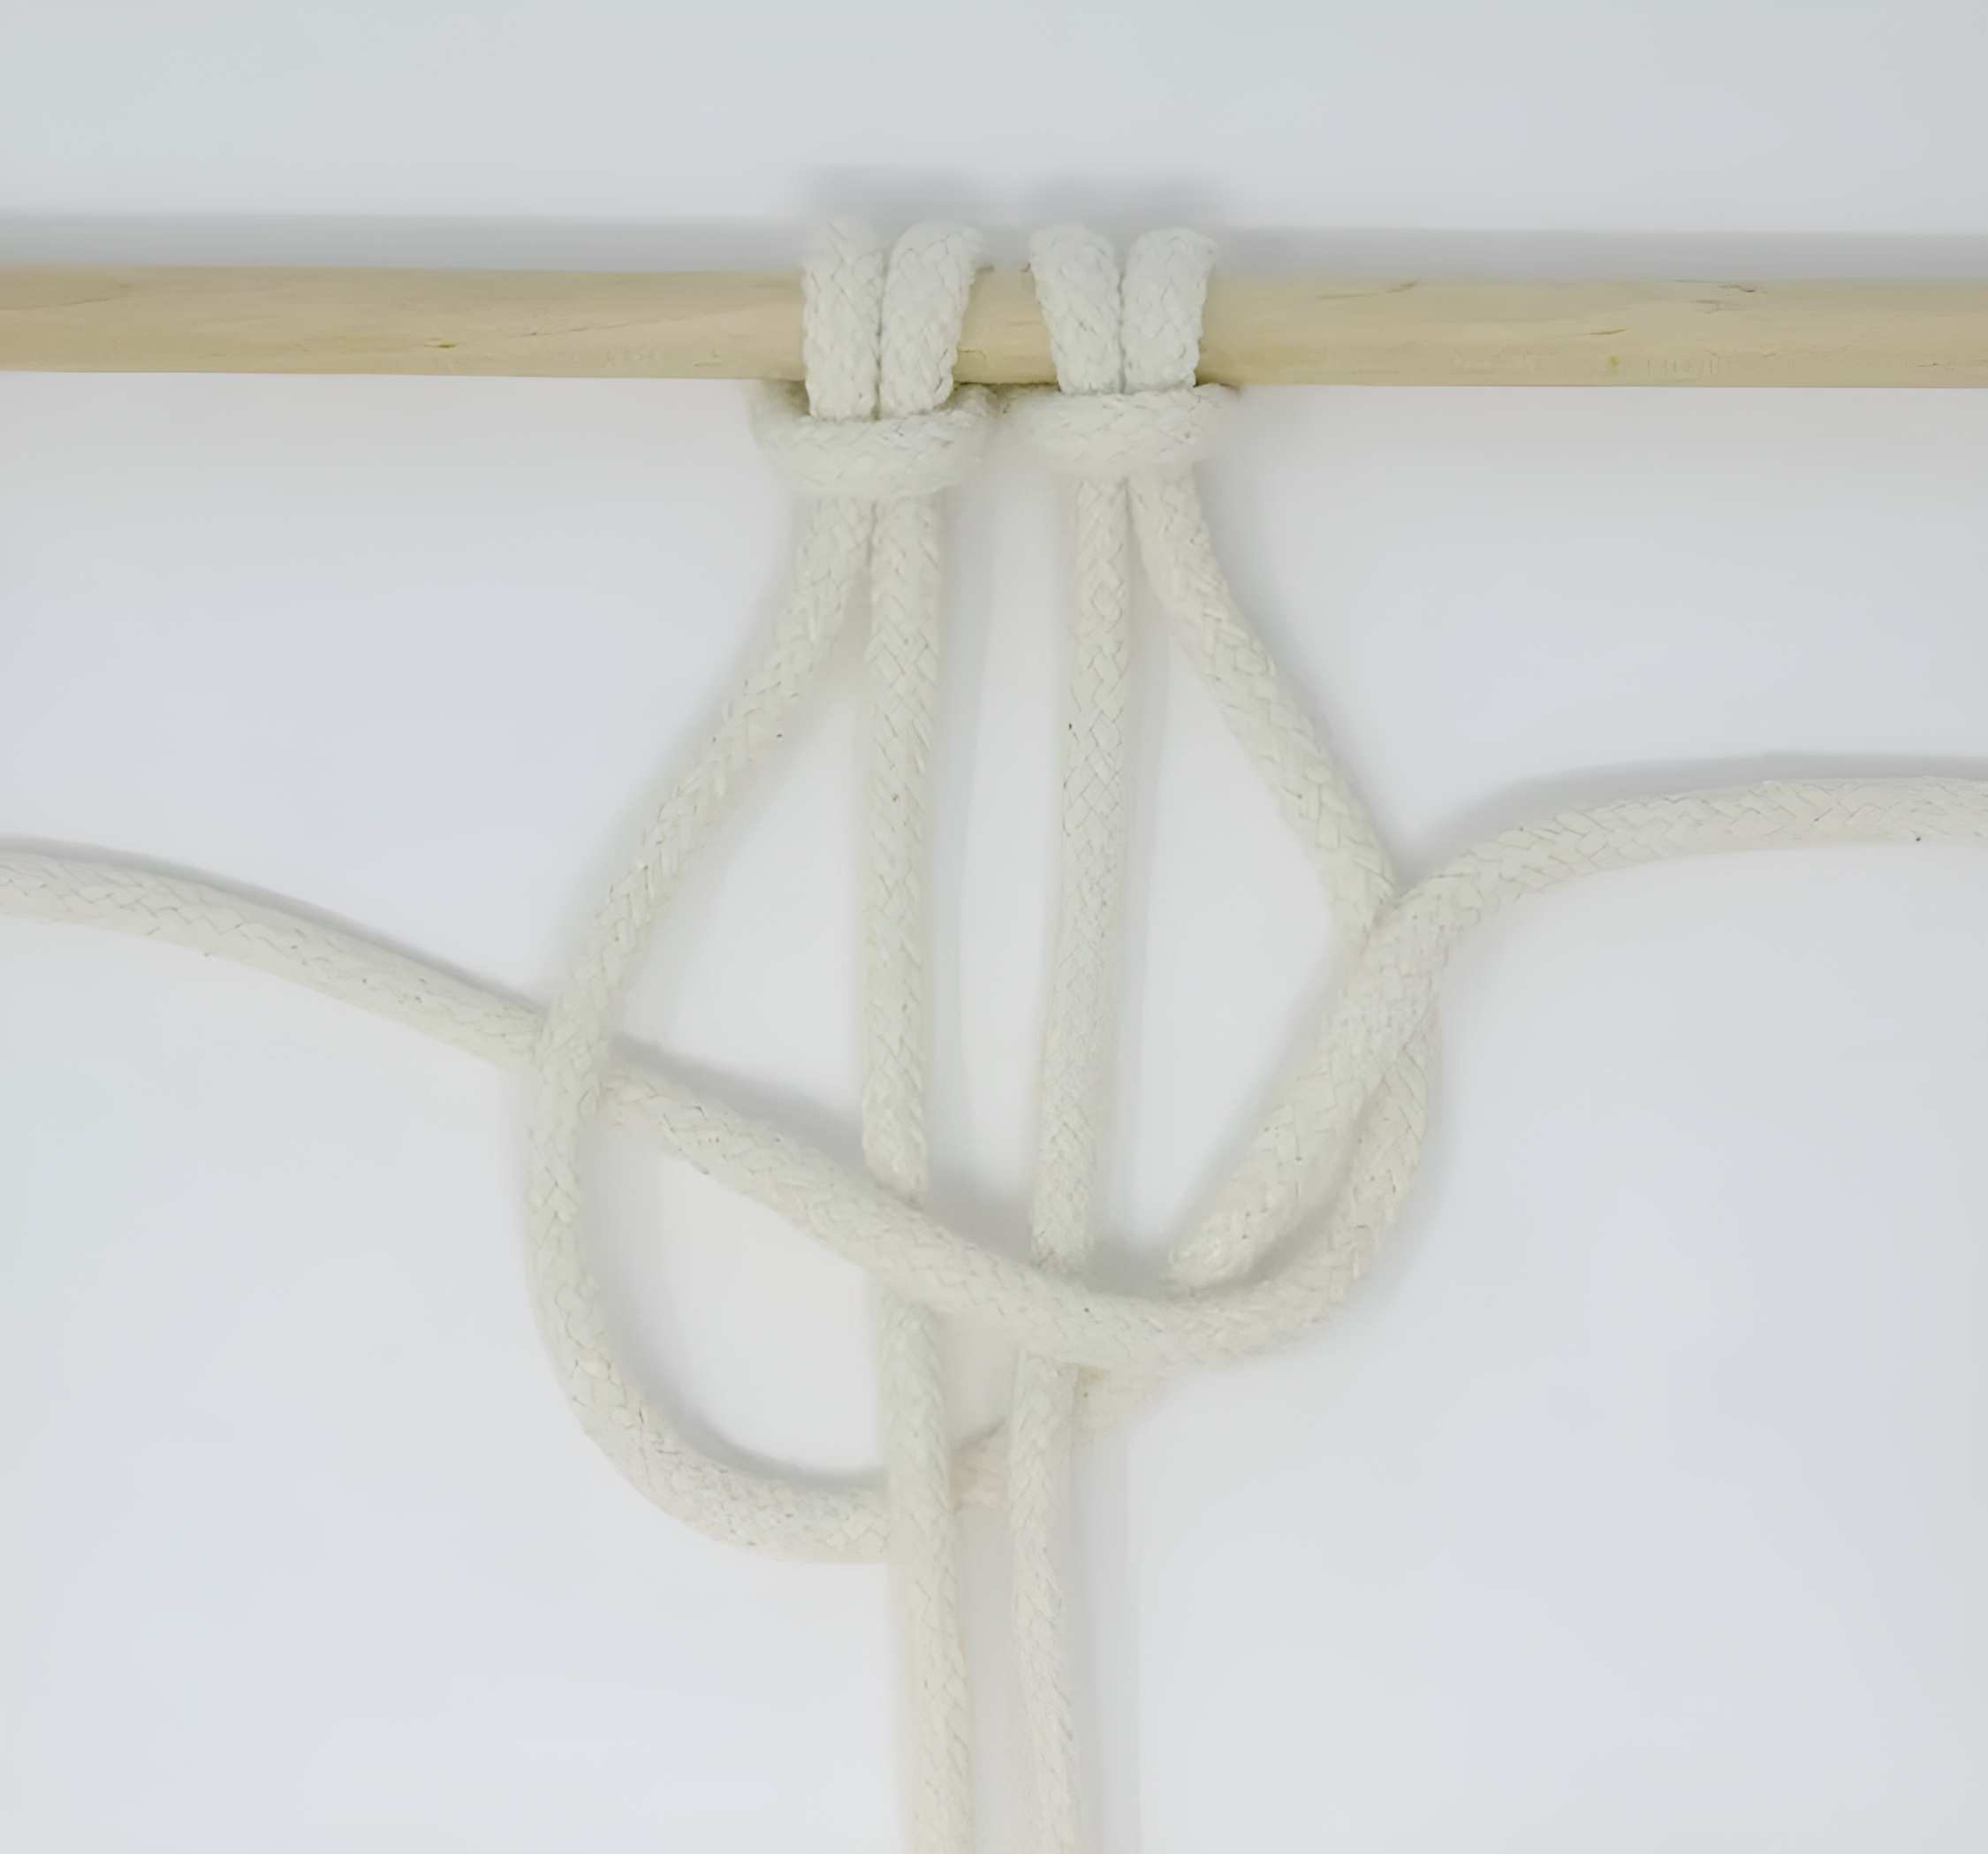 Lấy sợi dây cuối cùng (dây làm việc 4) và di chuyển nó sang bên trái, trên dây phụ (dây 2 và 3) và dưới dây đầu tiên (dây làm việc 1).